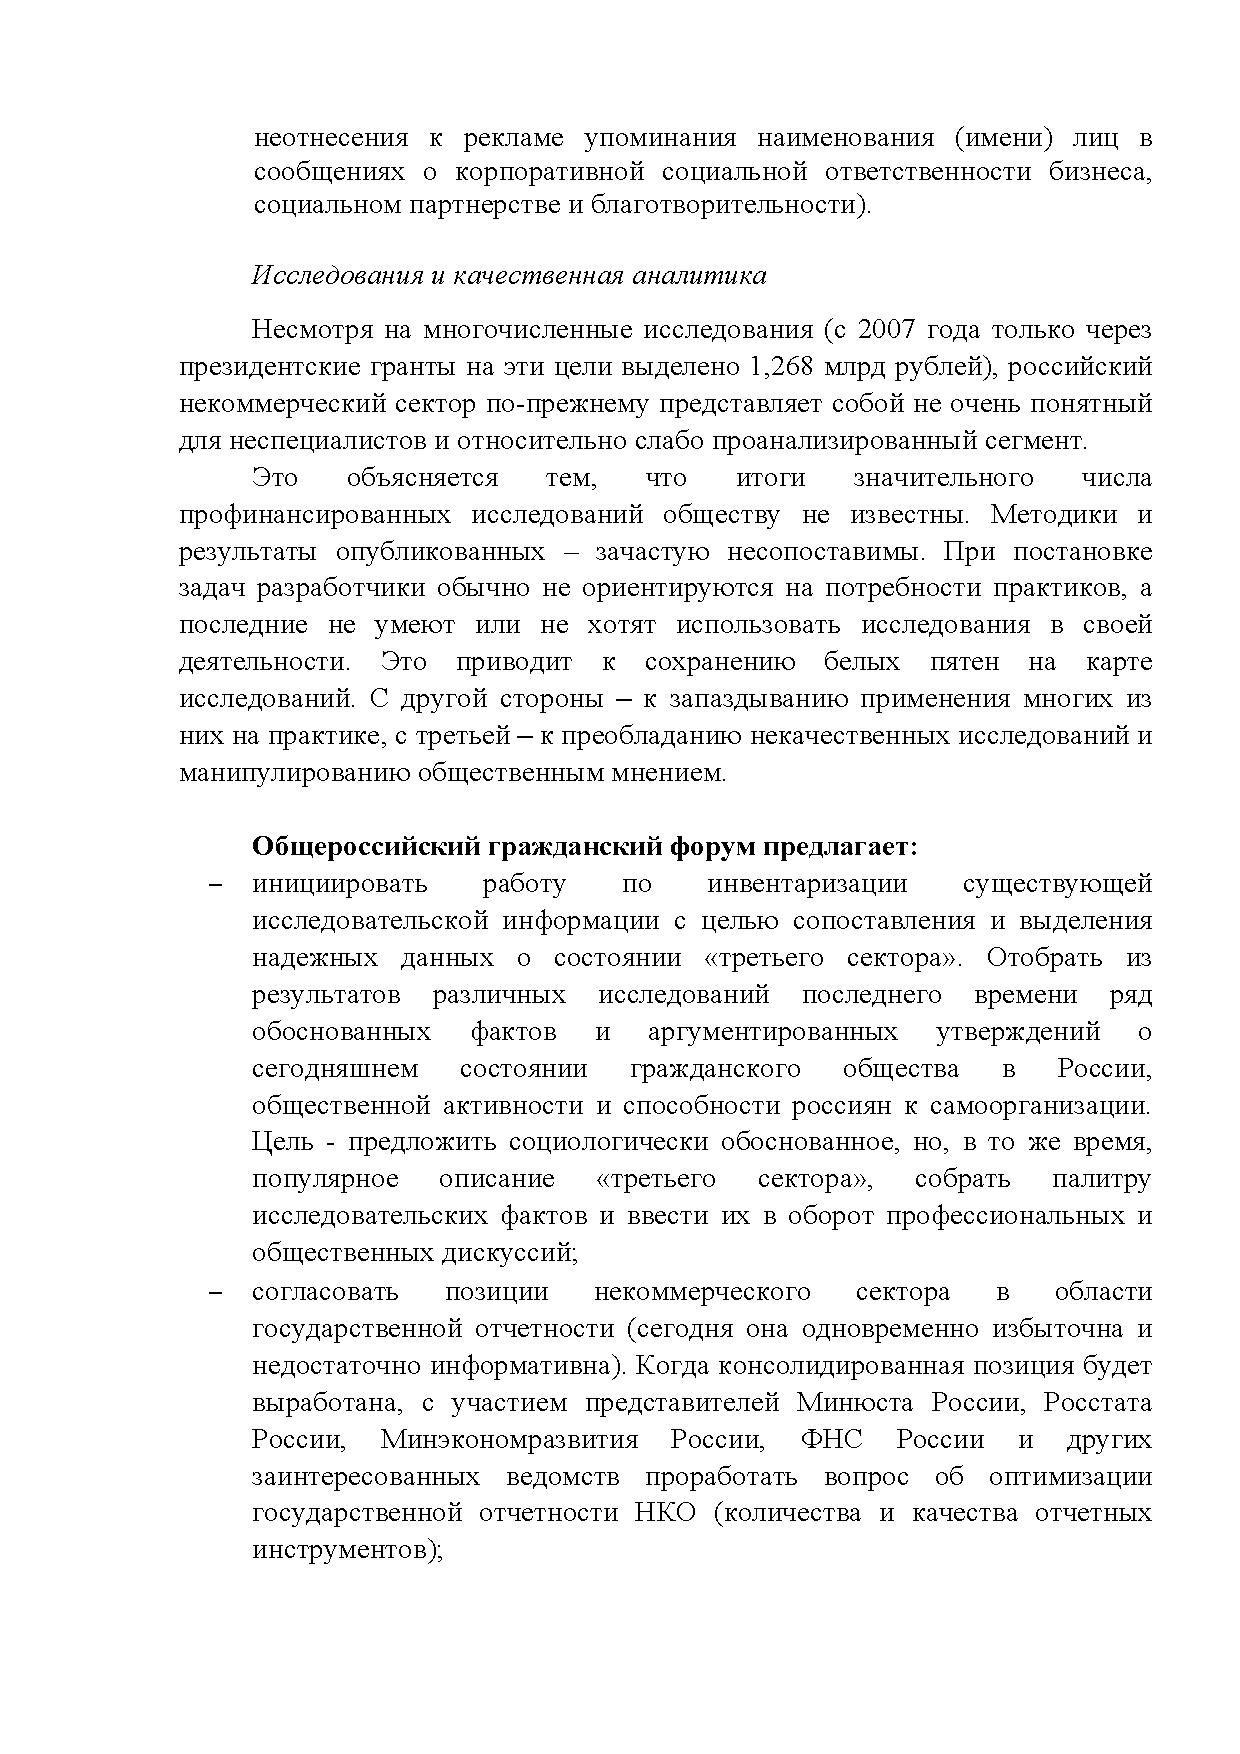  Опубликованы Предложения Общероссийского гражданского форума 2015 - фото 8